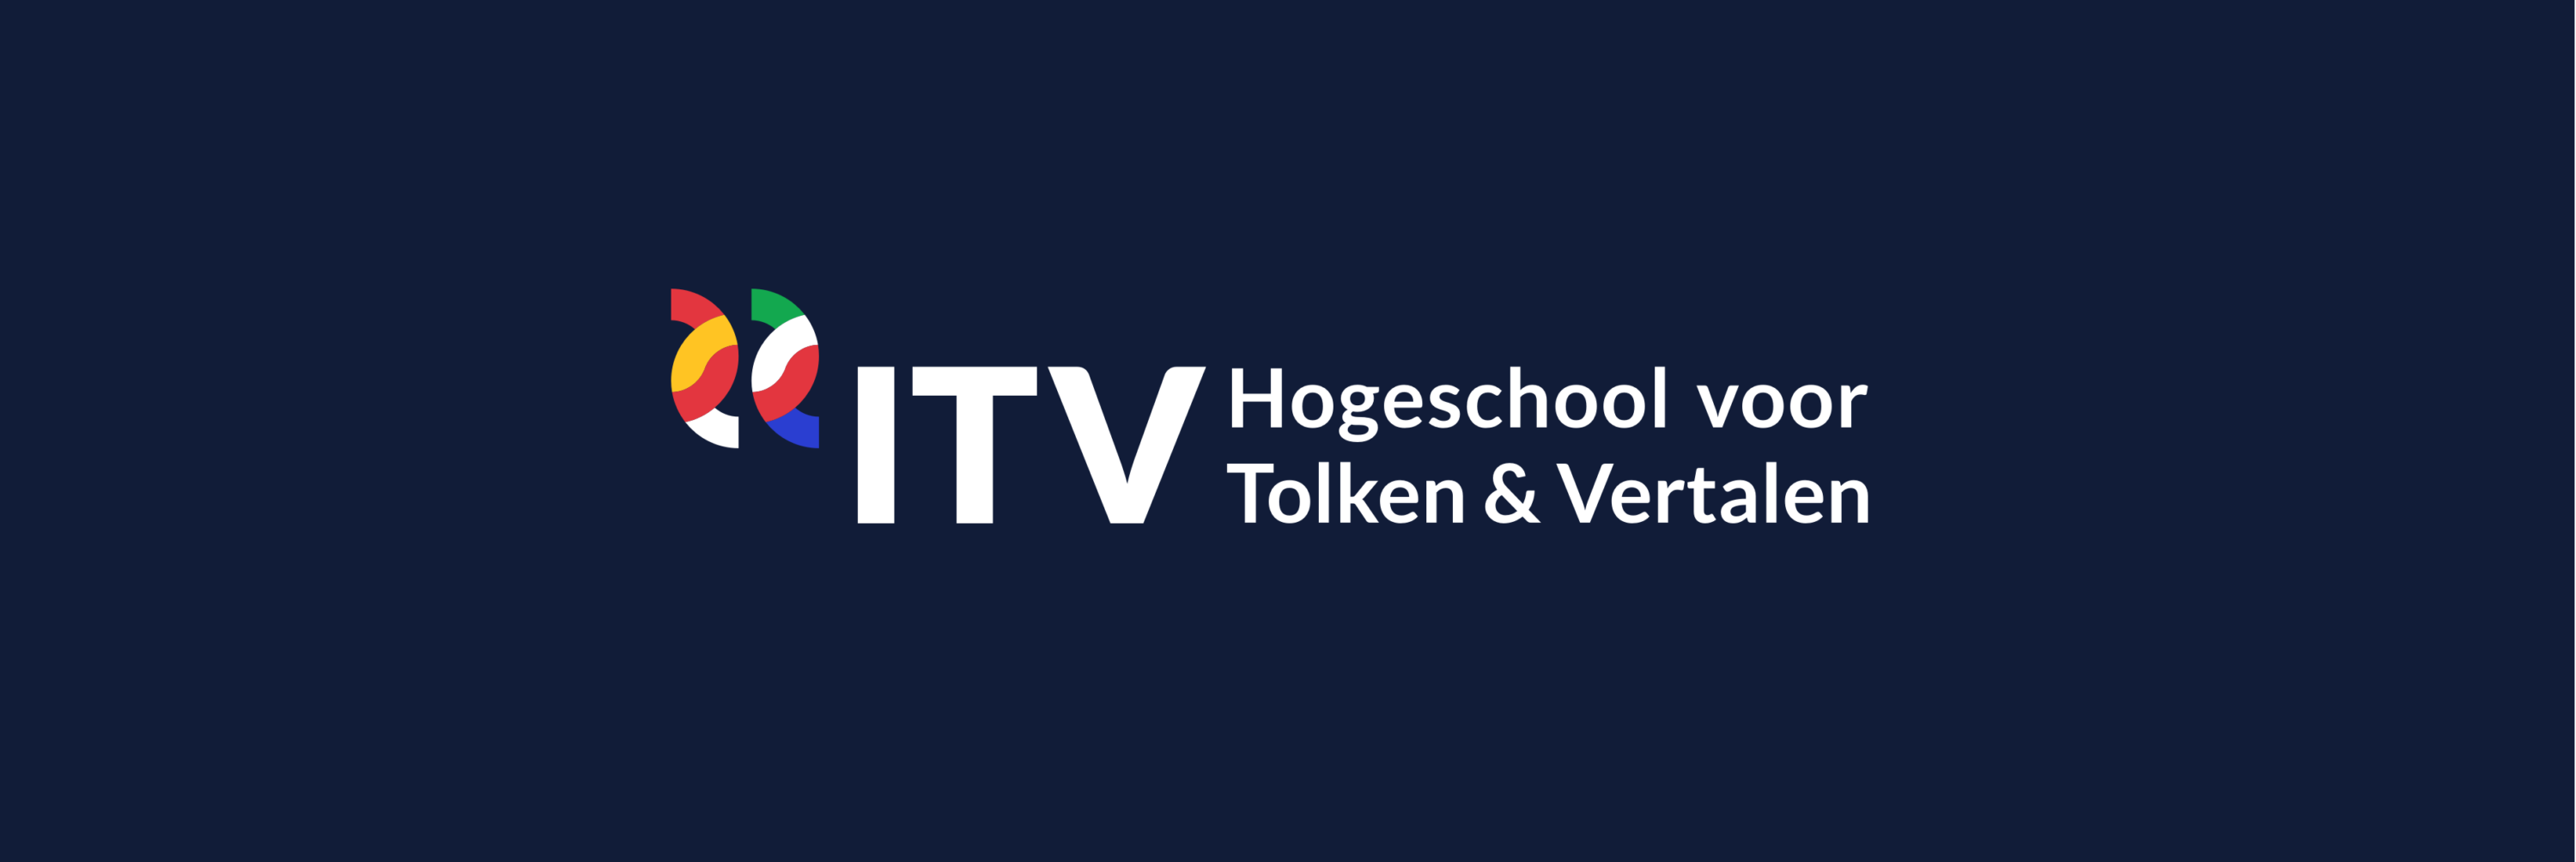 ITV Hogeschool voor tolken en vertalen